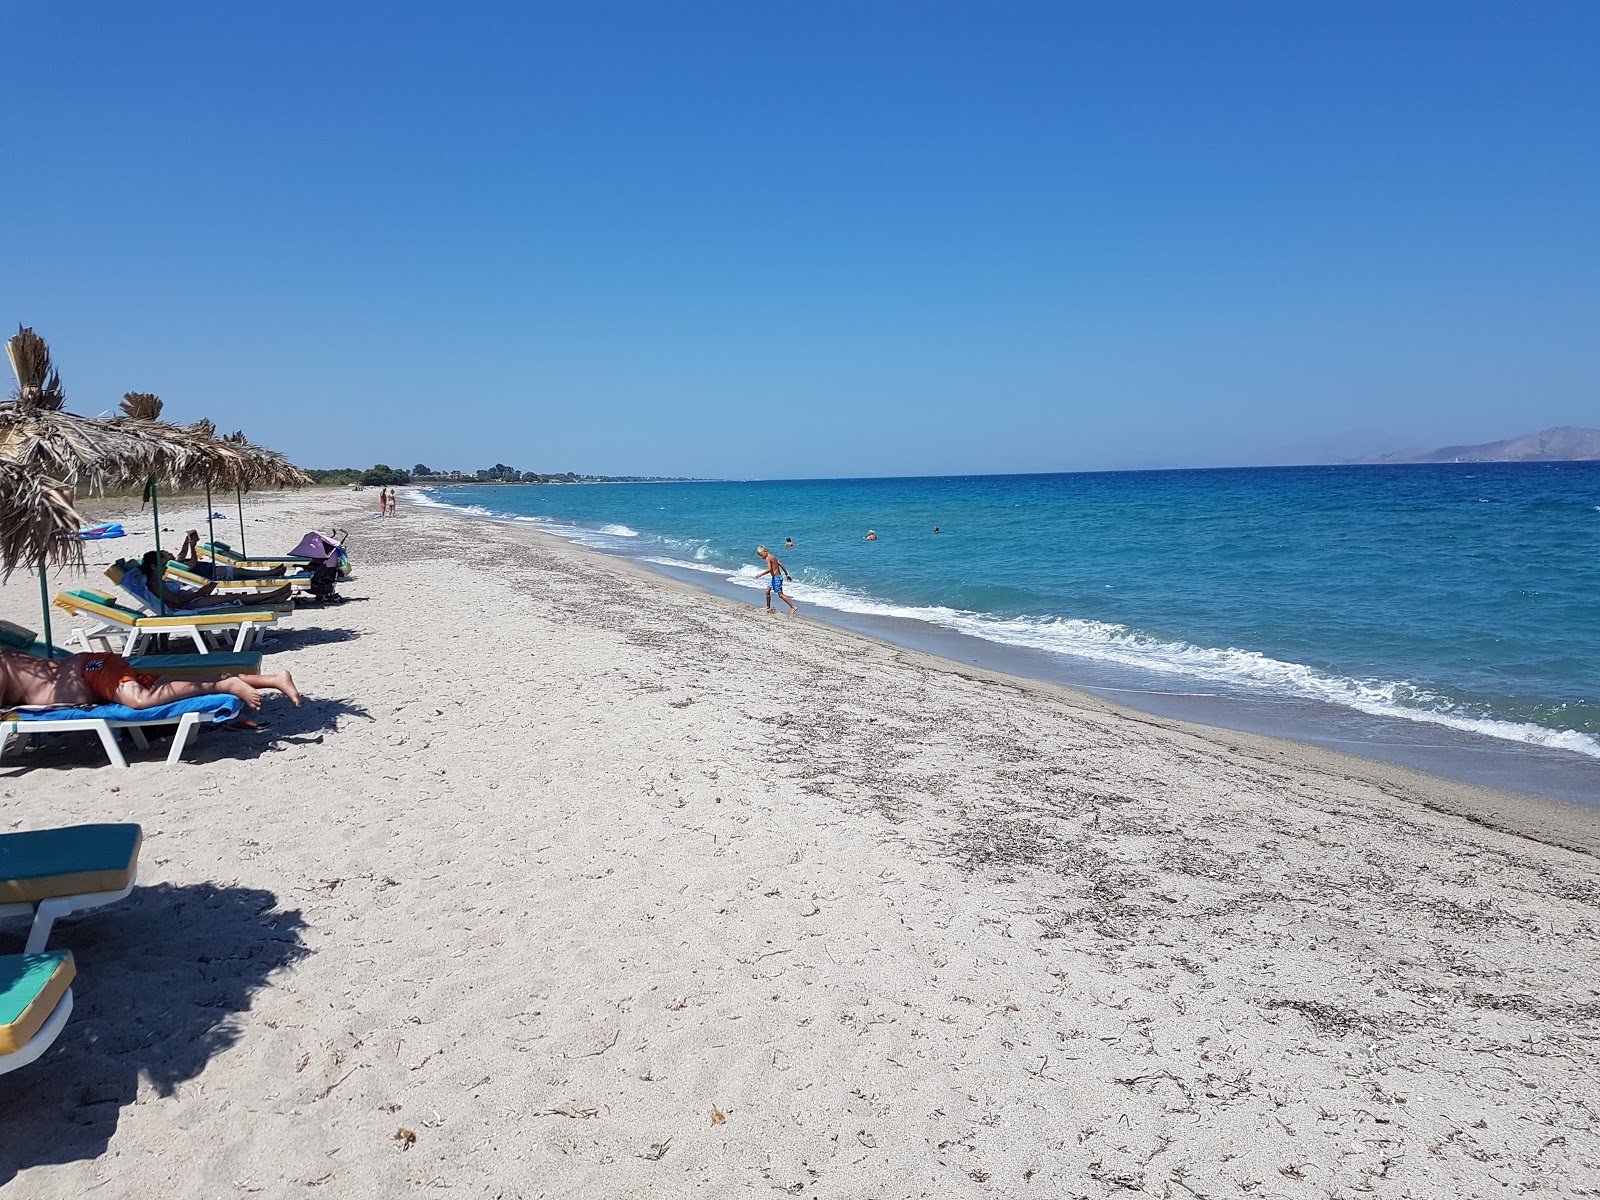 Peleziki Kos'in fotoğrafı geniş plaj ile birlikte